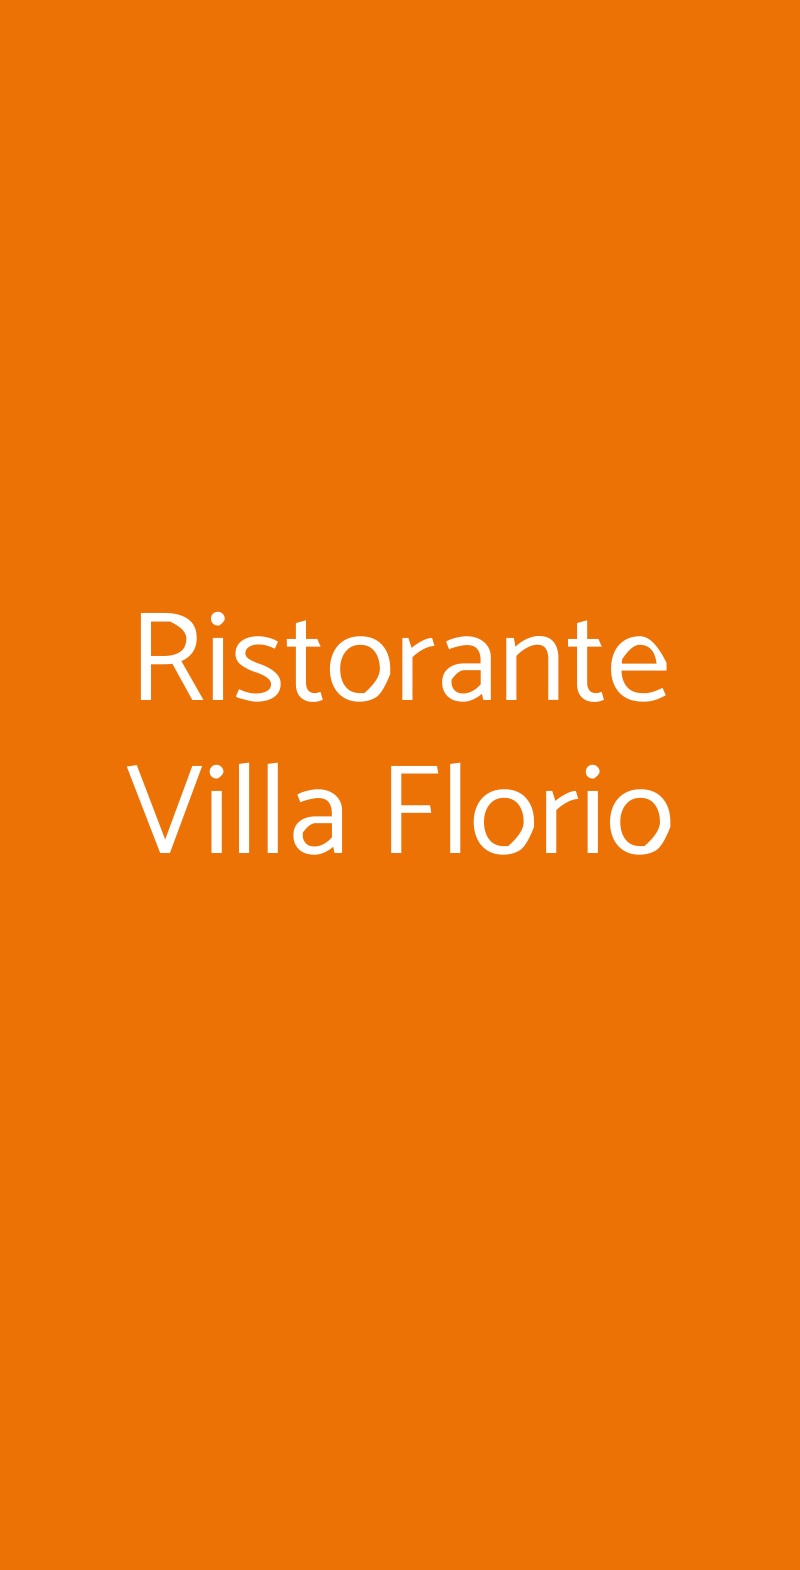 Ristorante Villa Florio Ercolano menù 1 pagina